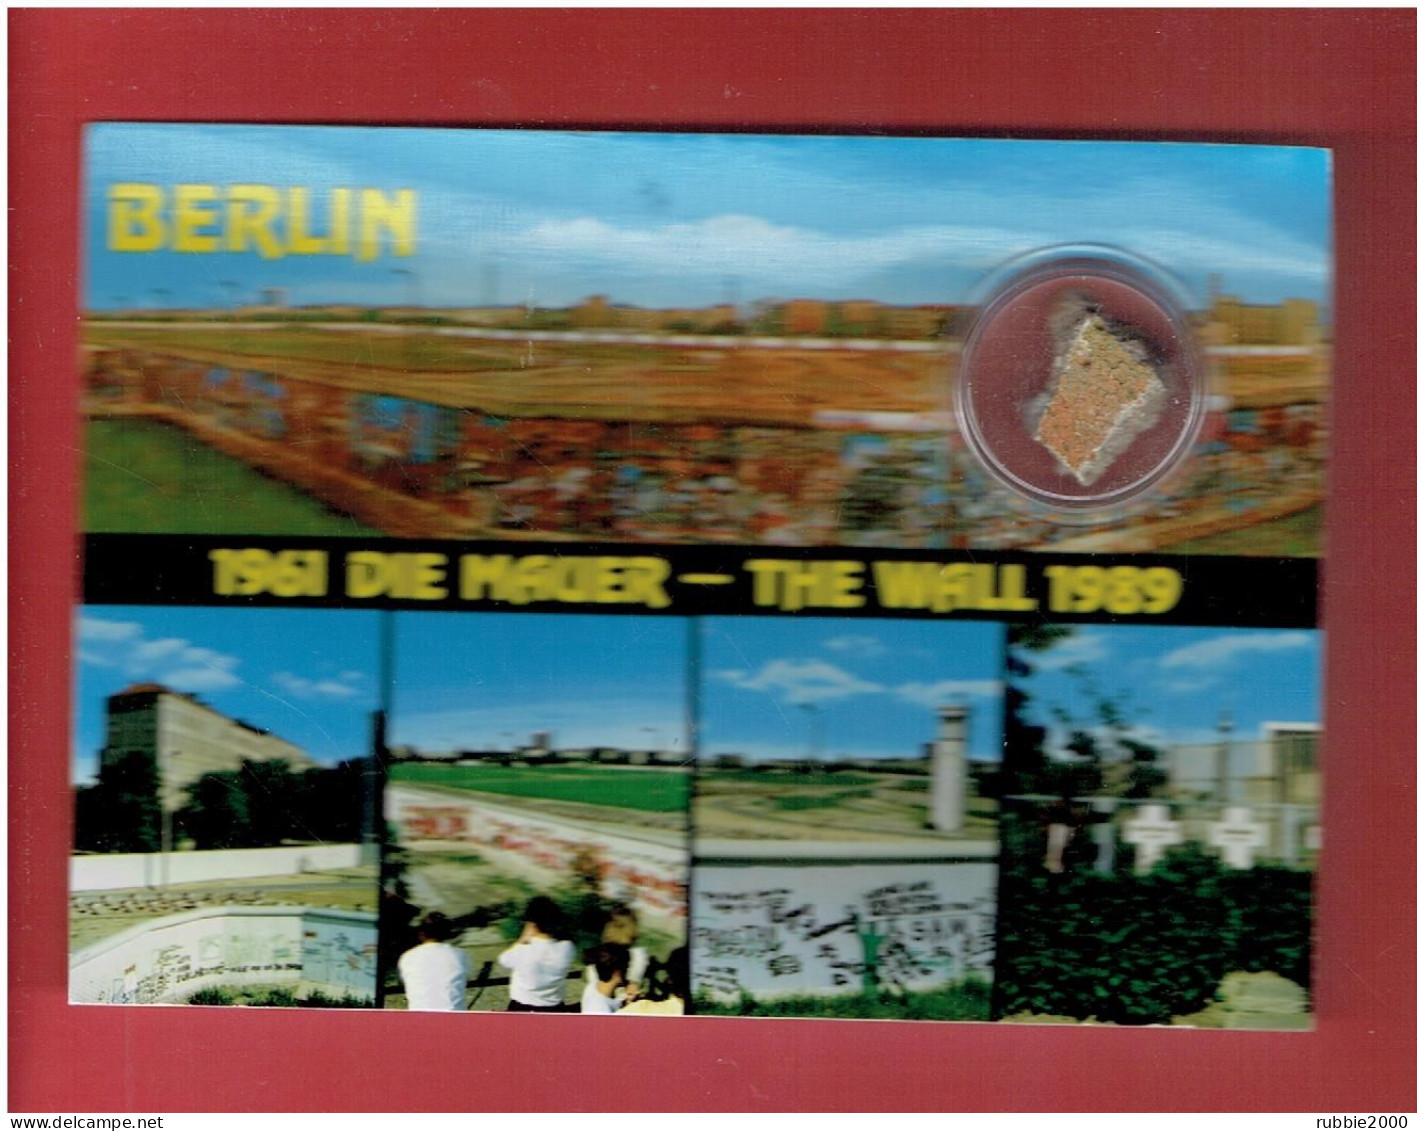 GERMANY BERLIN 1961 DIE MAUER THE WALL 1989 AVEC UN VERITABLE MORCEAU DU MUR - Berlin Wall